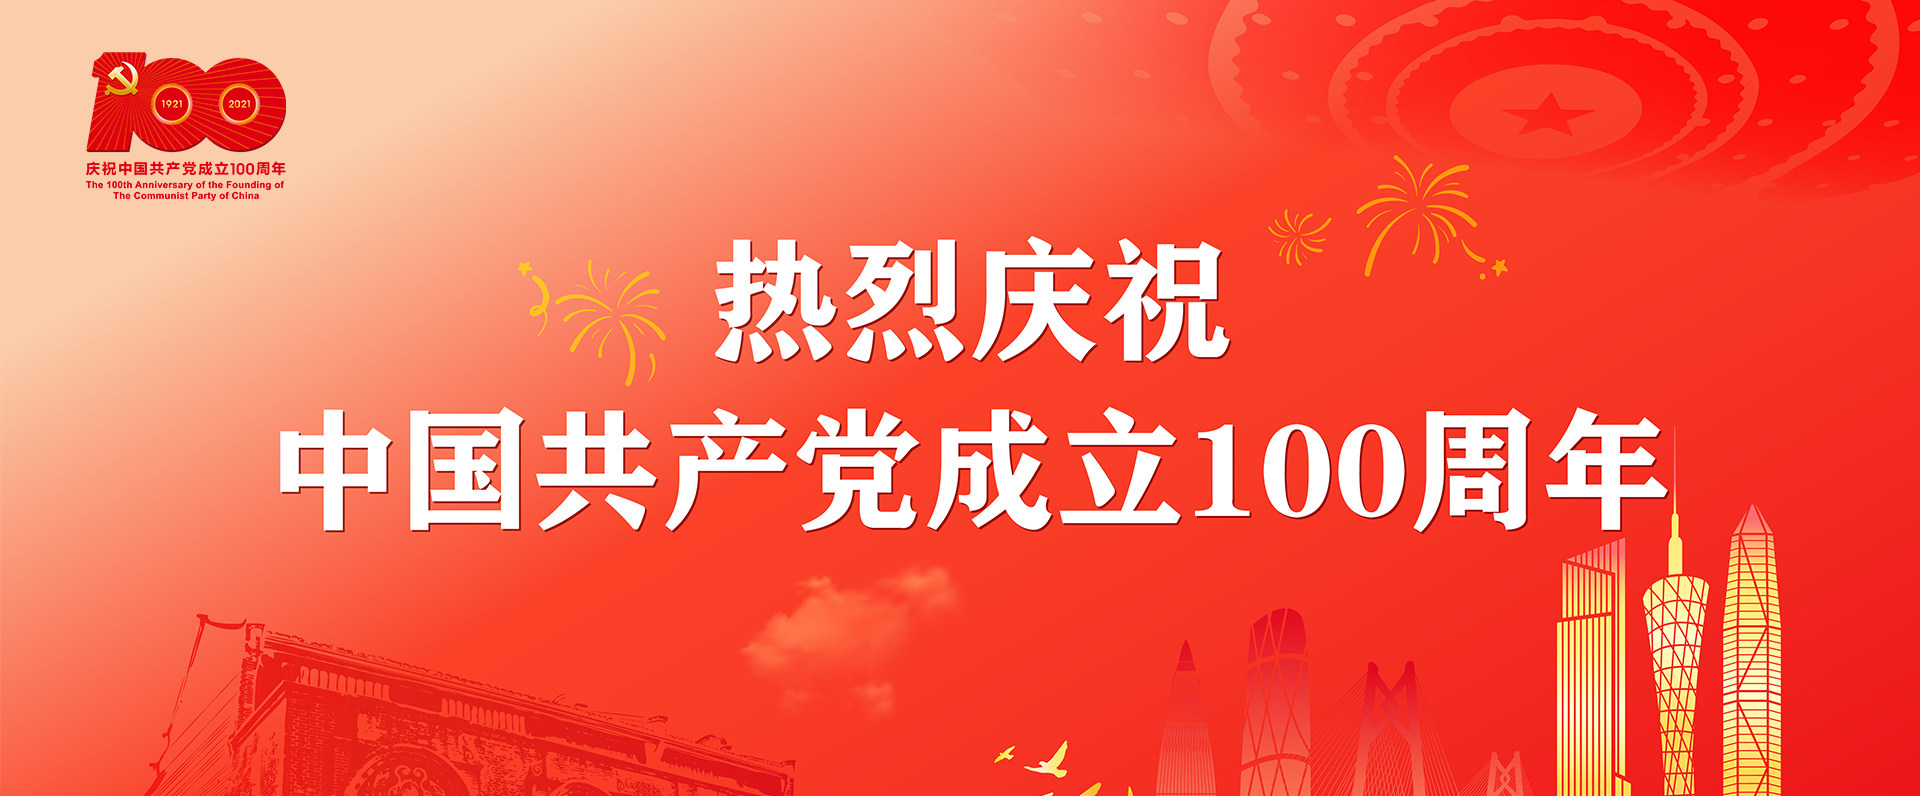 慶(qing)祝中國共產(chan)黨成立100周年(nian)